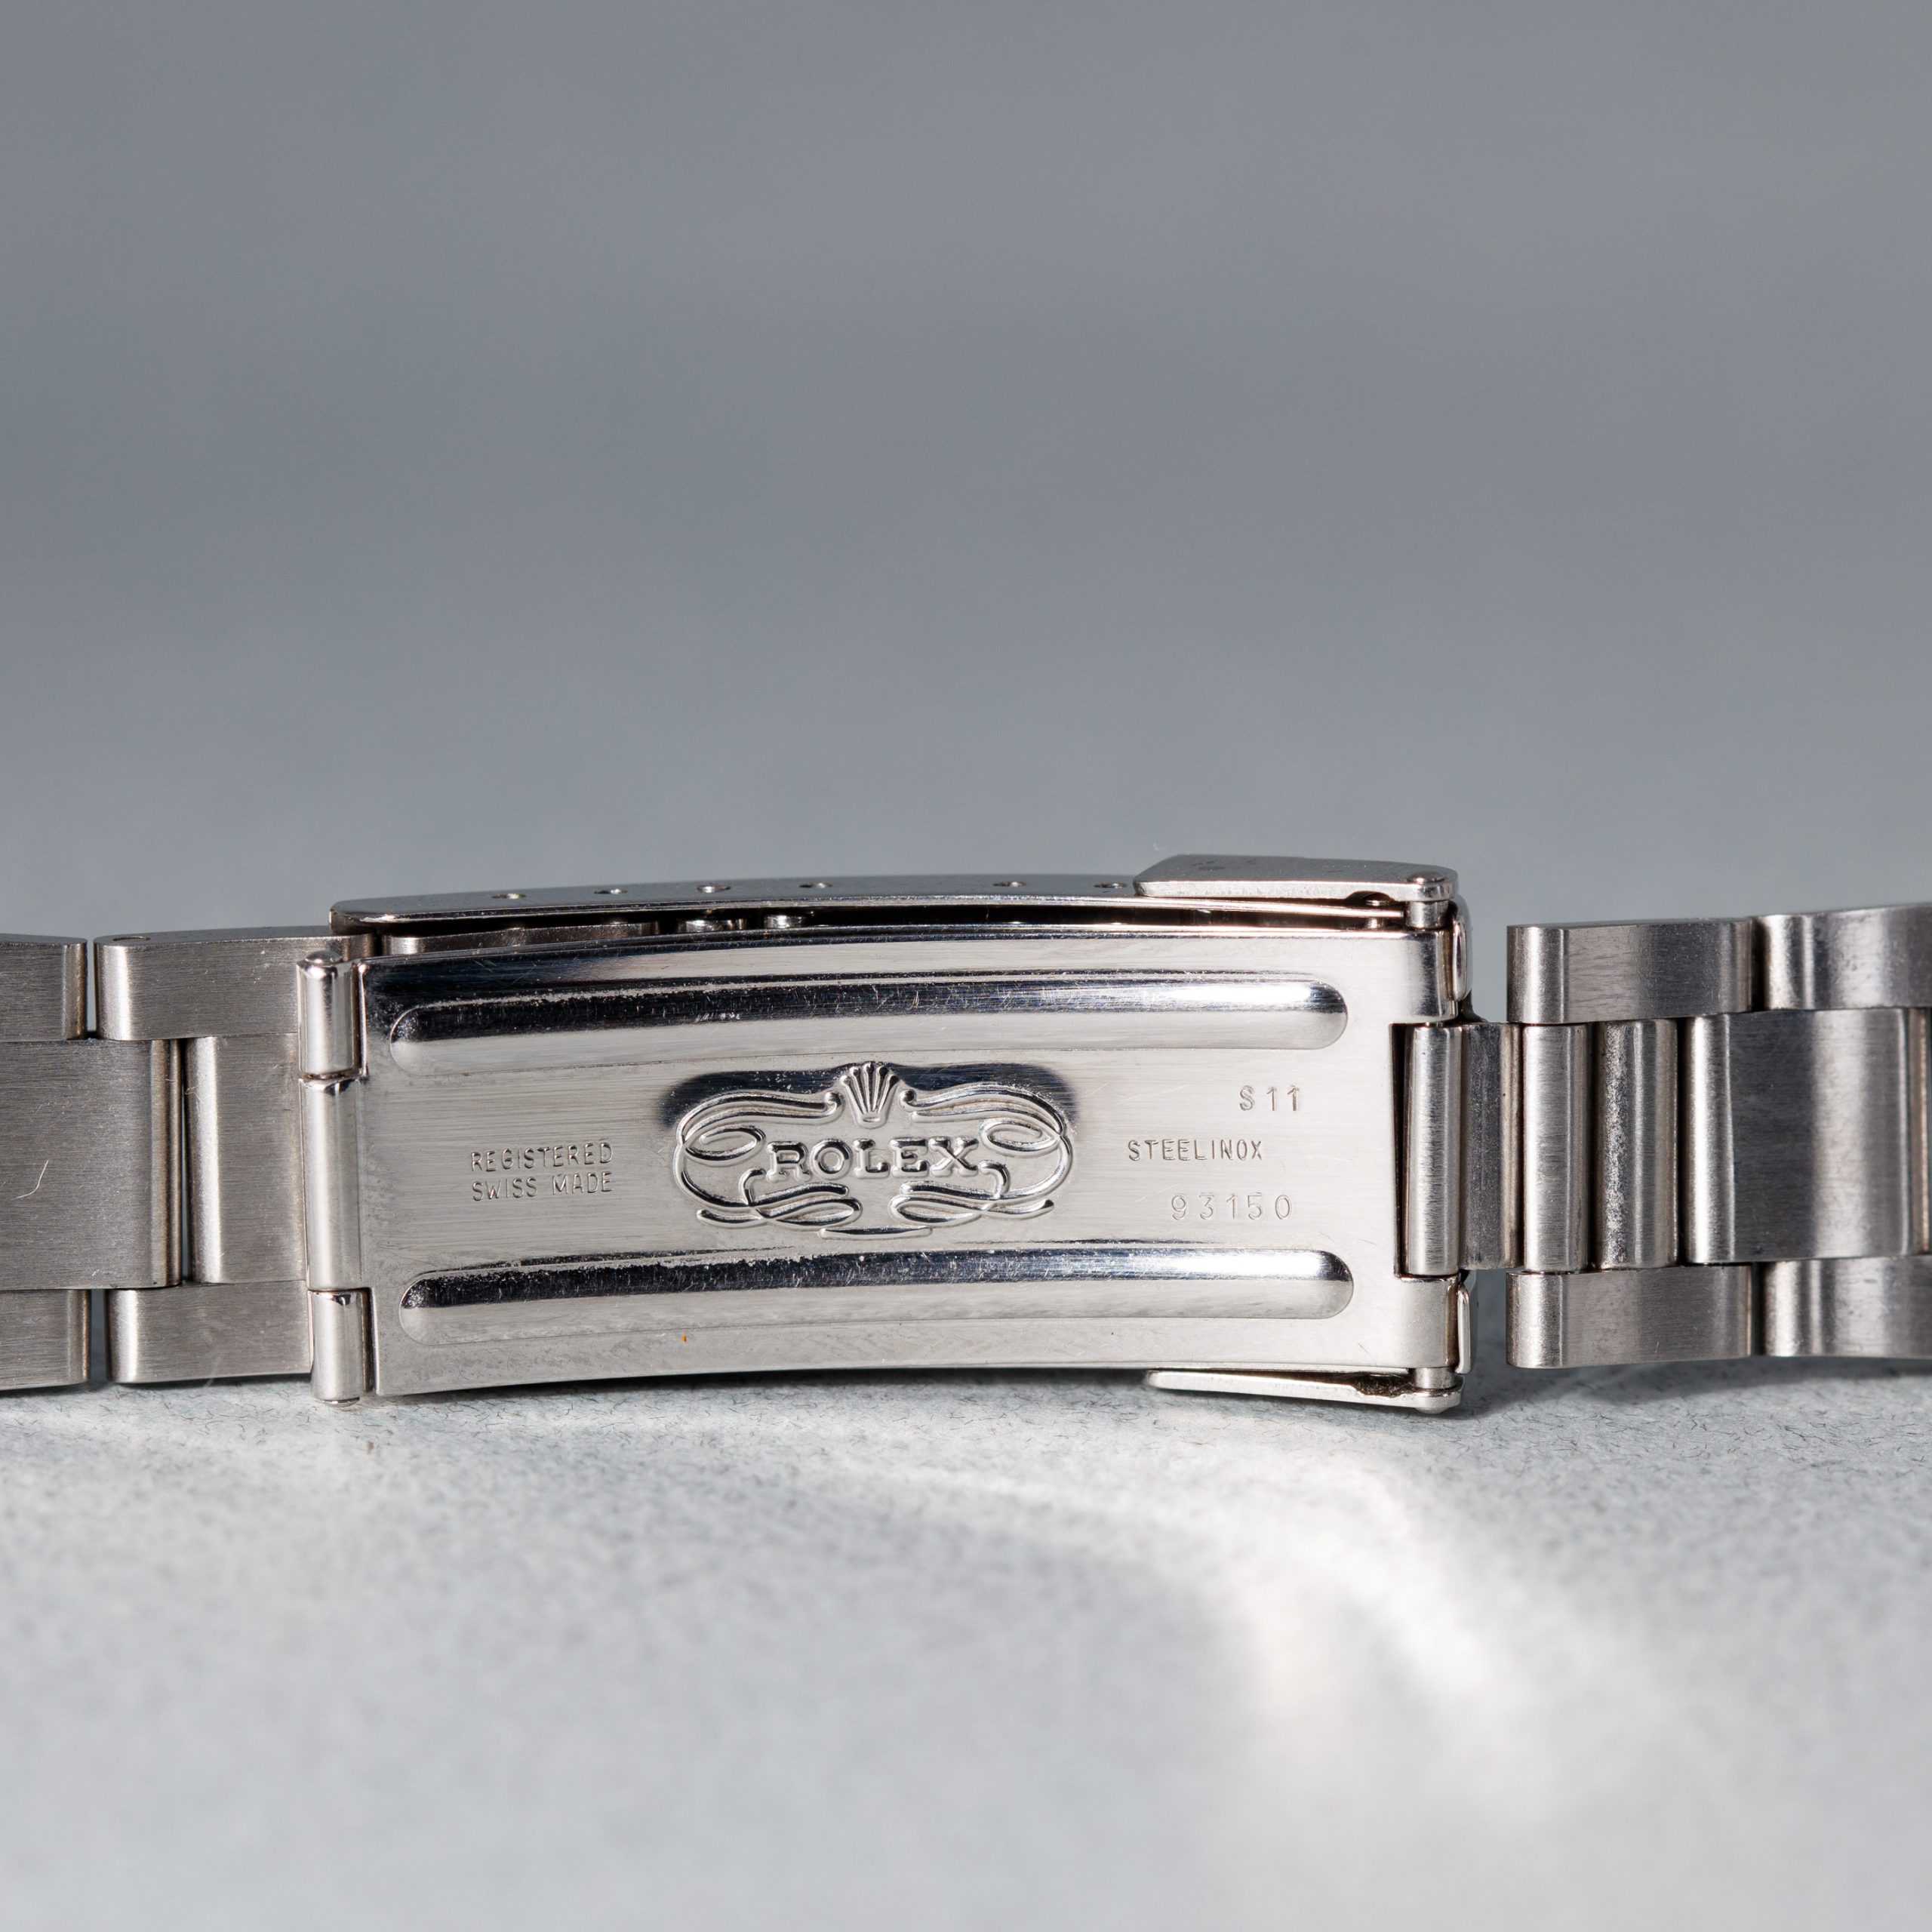 Rolex joint de fond de boites ref B29-213-66-C10 montres Rolex